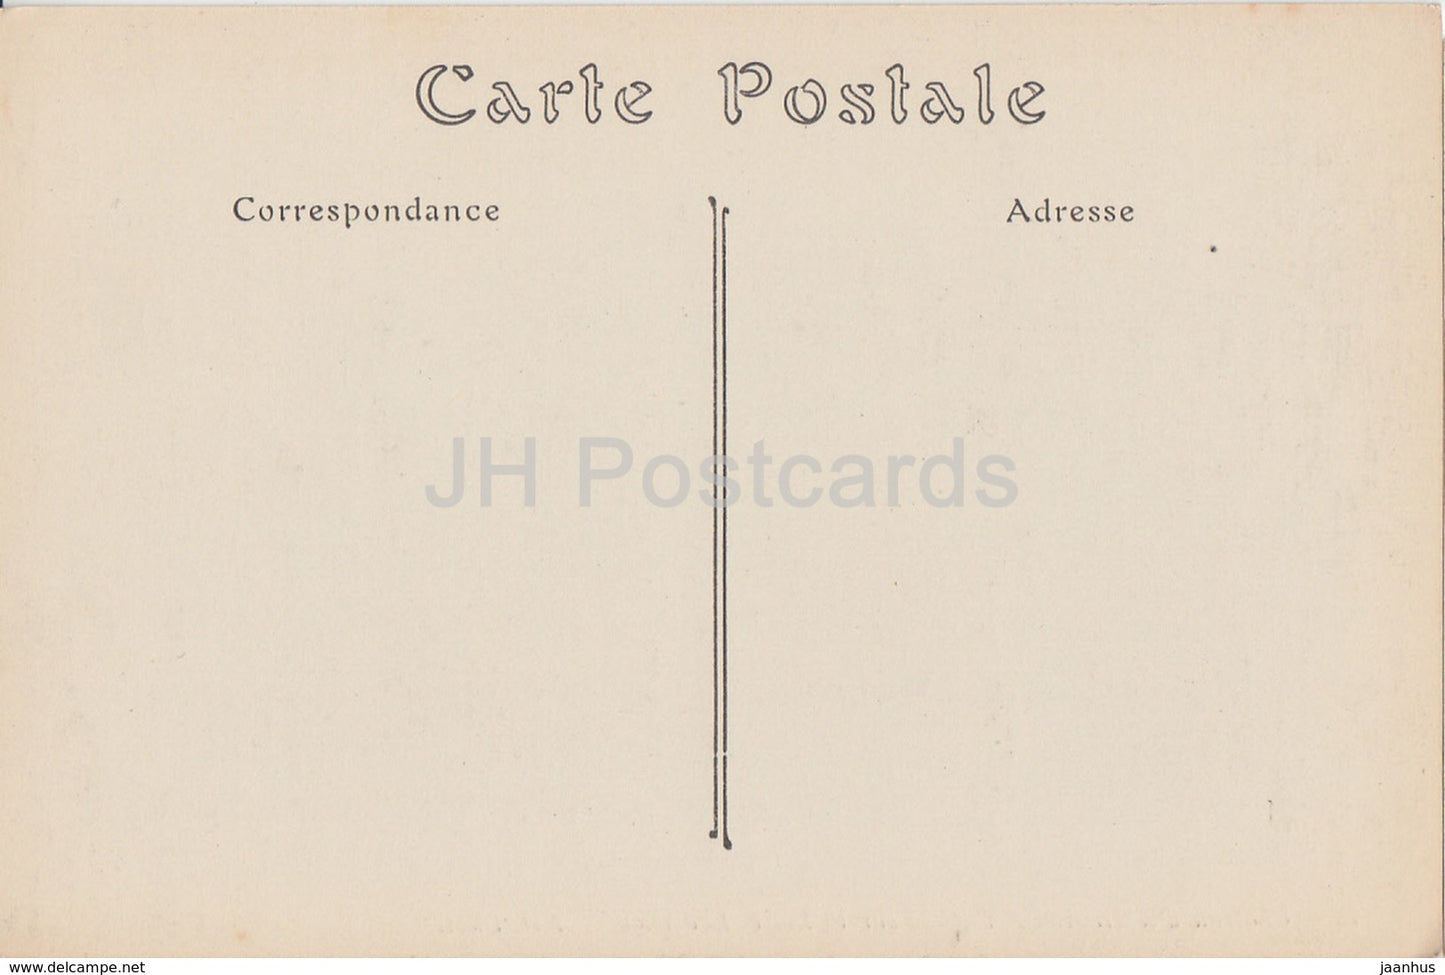 Chateau d' Amboise - Fassade sur la Loire - Lucarnes - Schloss - 78 - alte Postkarte - Frankreich - unbenutzt